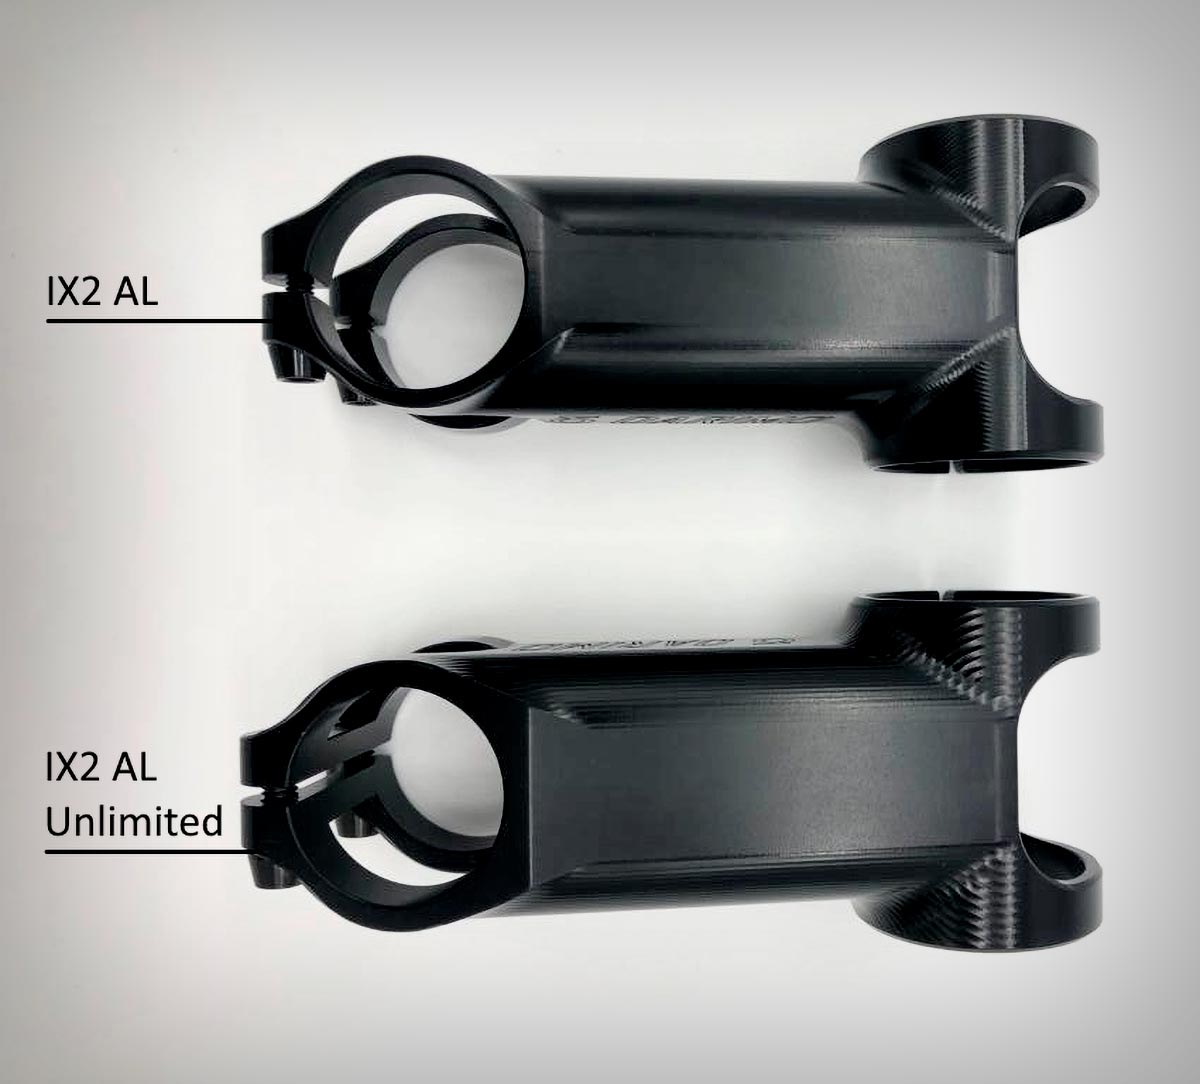 Darimo IX2 AL Unlimited, una potencia indestructible de solo 99 gramos sin límite de peso para el ciclista